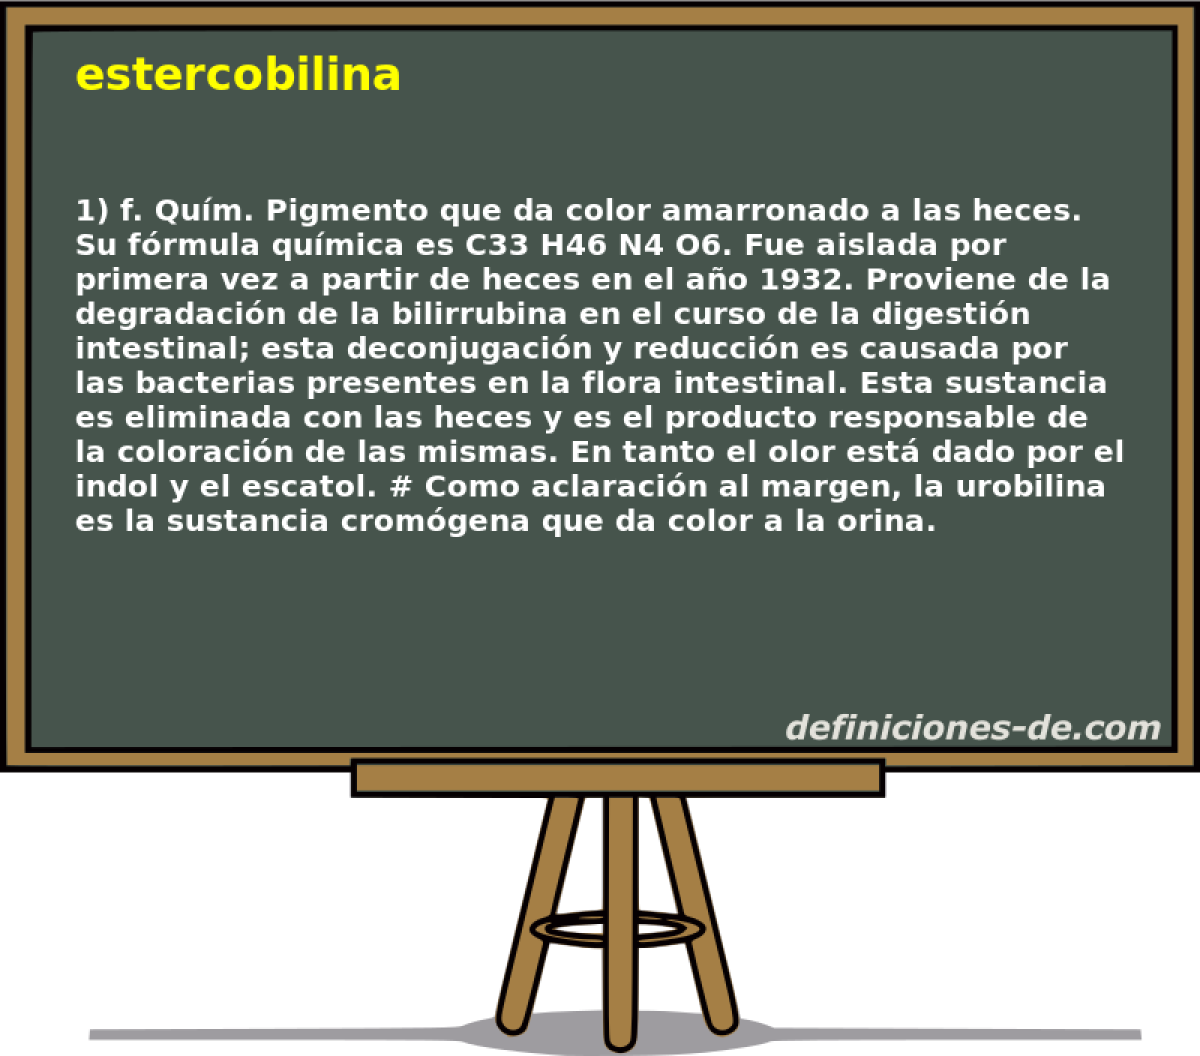 estercobilina 